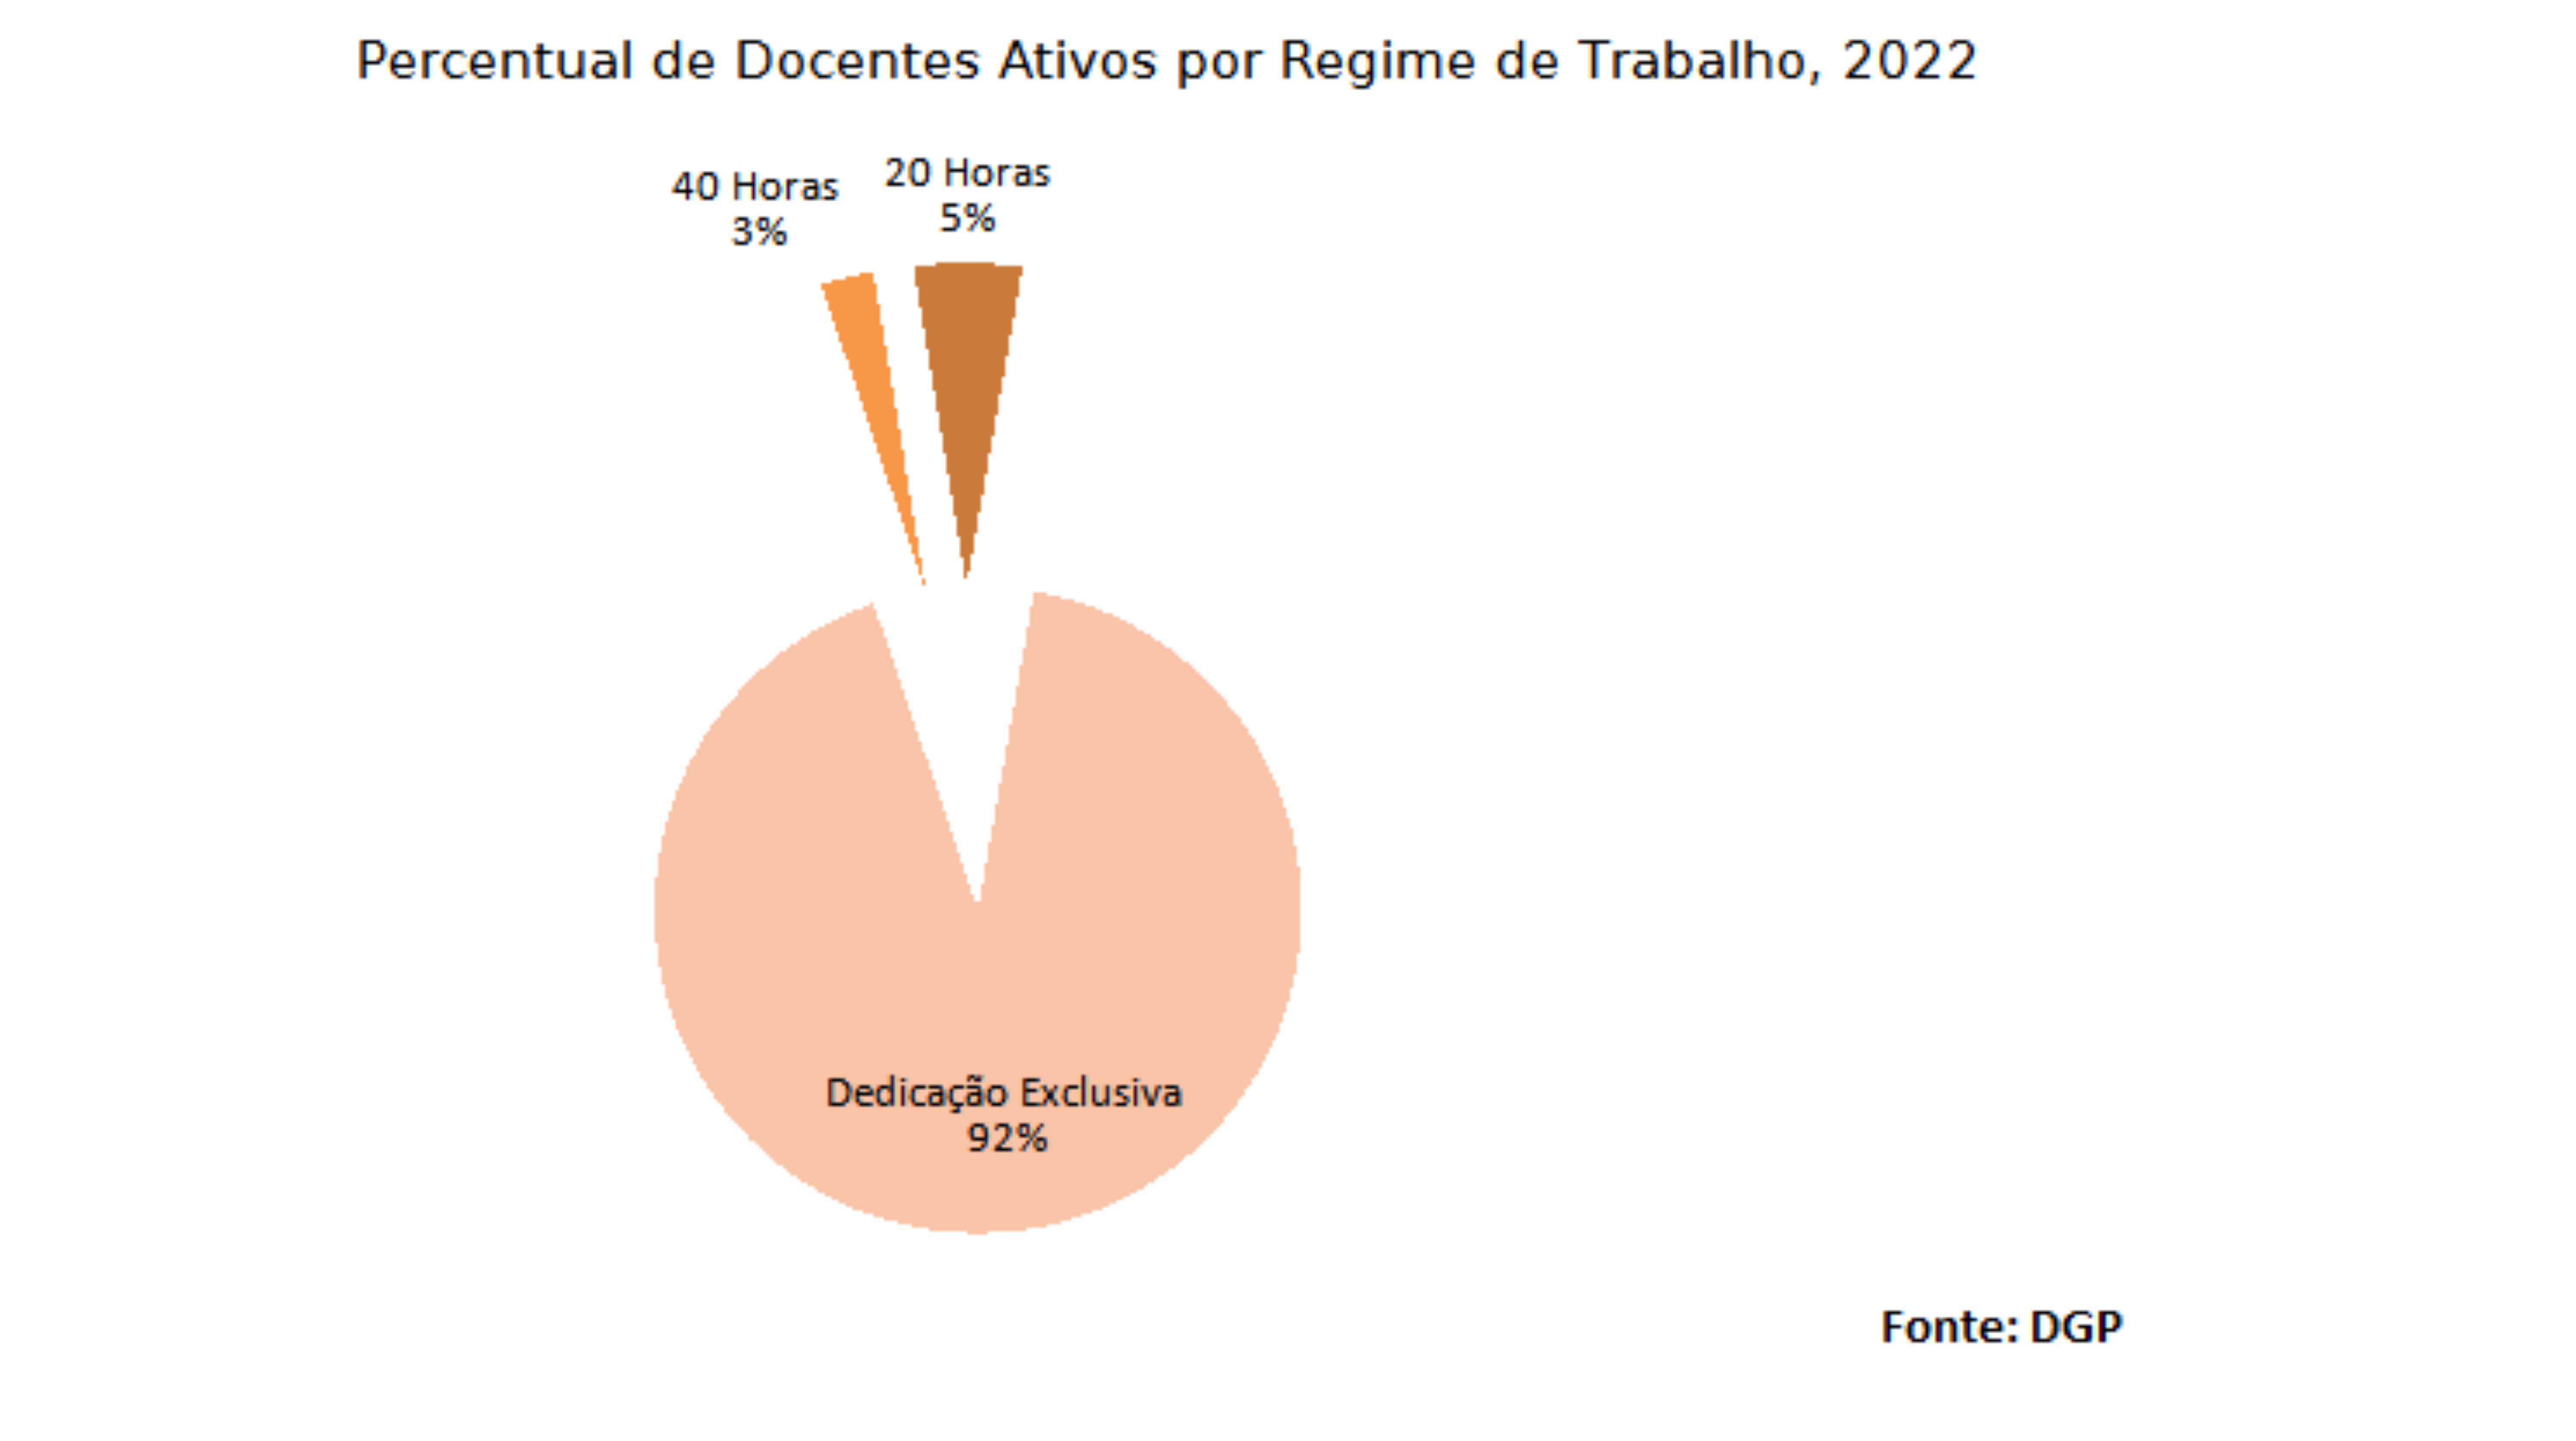 Percentual de docentes ativos por regime de trabalho, 2022